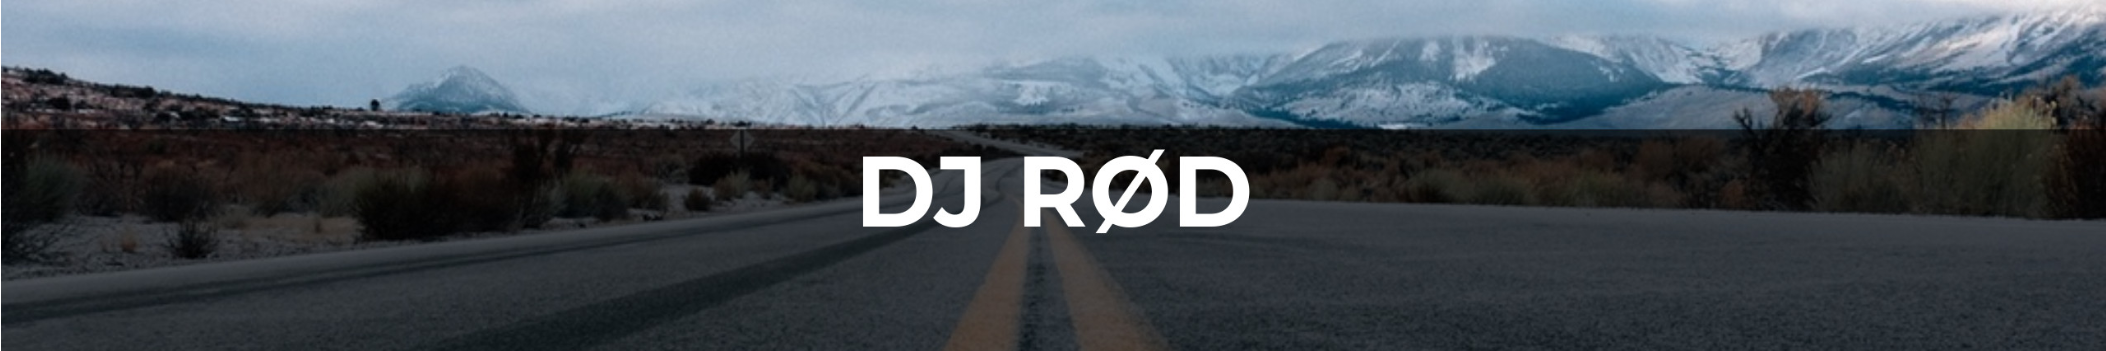 DJ ROD